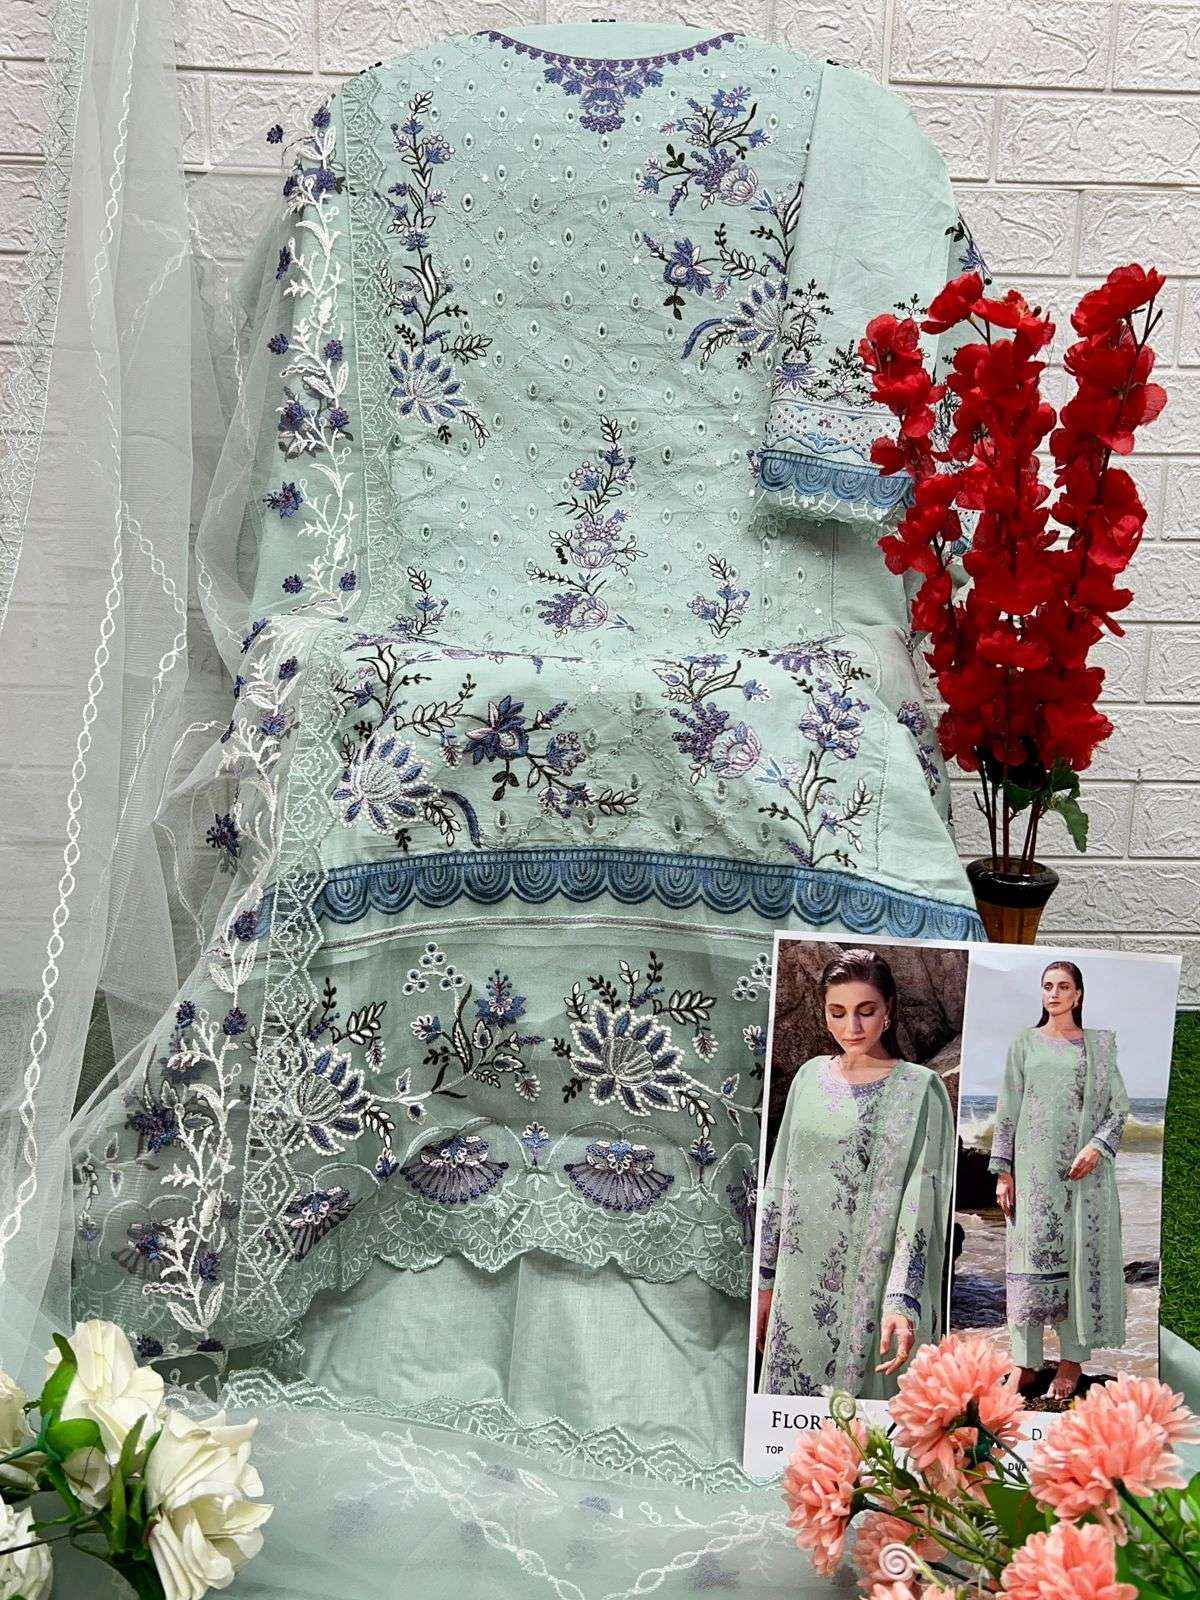 Zaha Florent Cambric Cotton Dress Material 4 pcs Catalogue